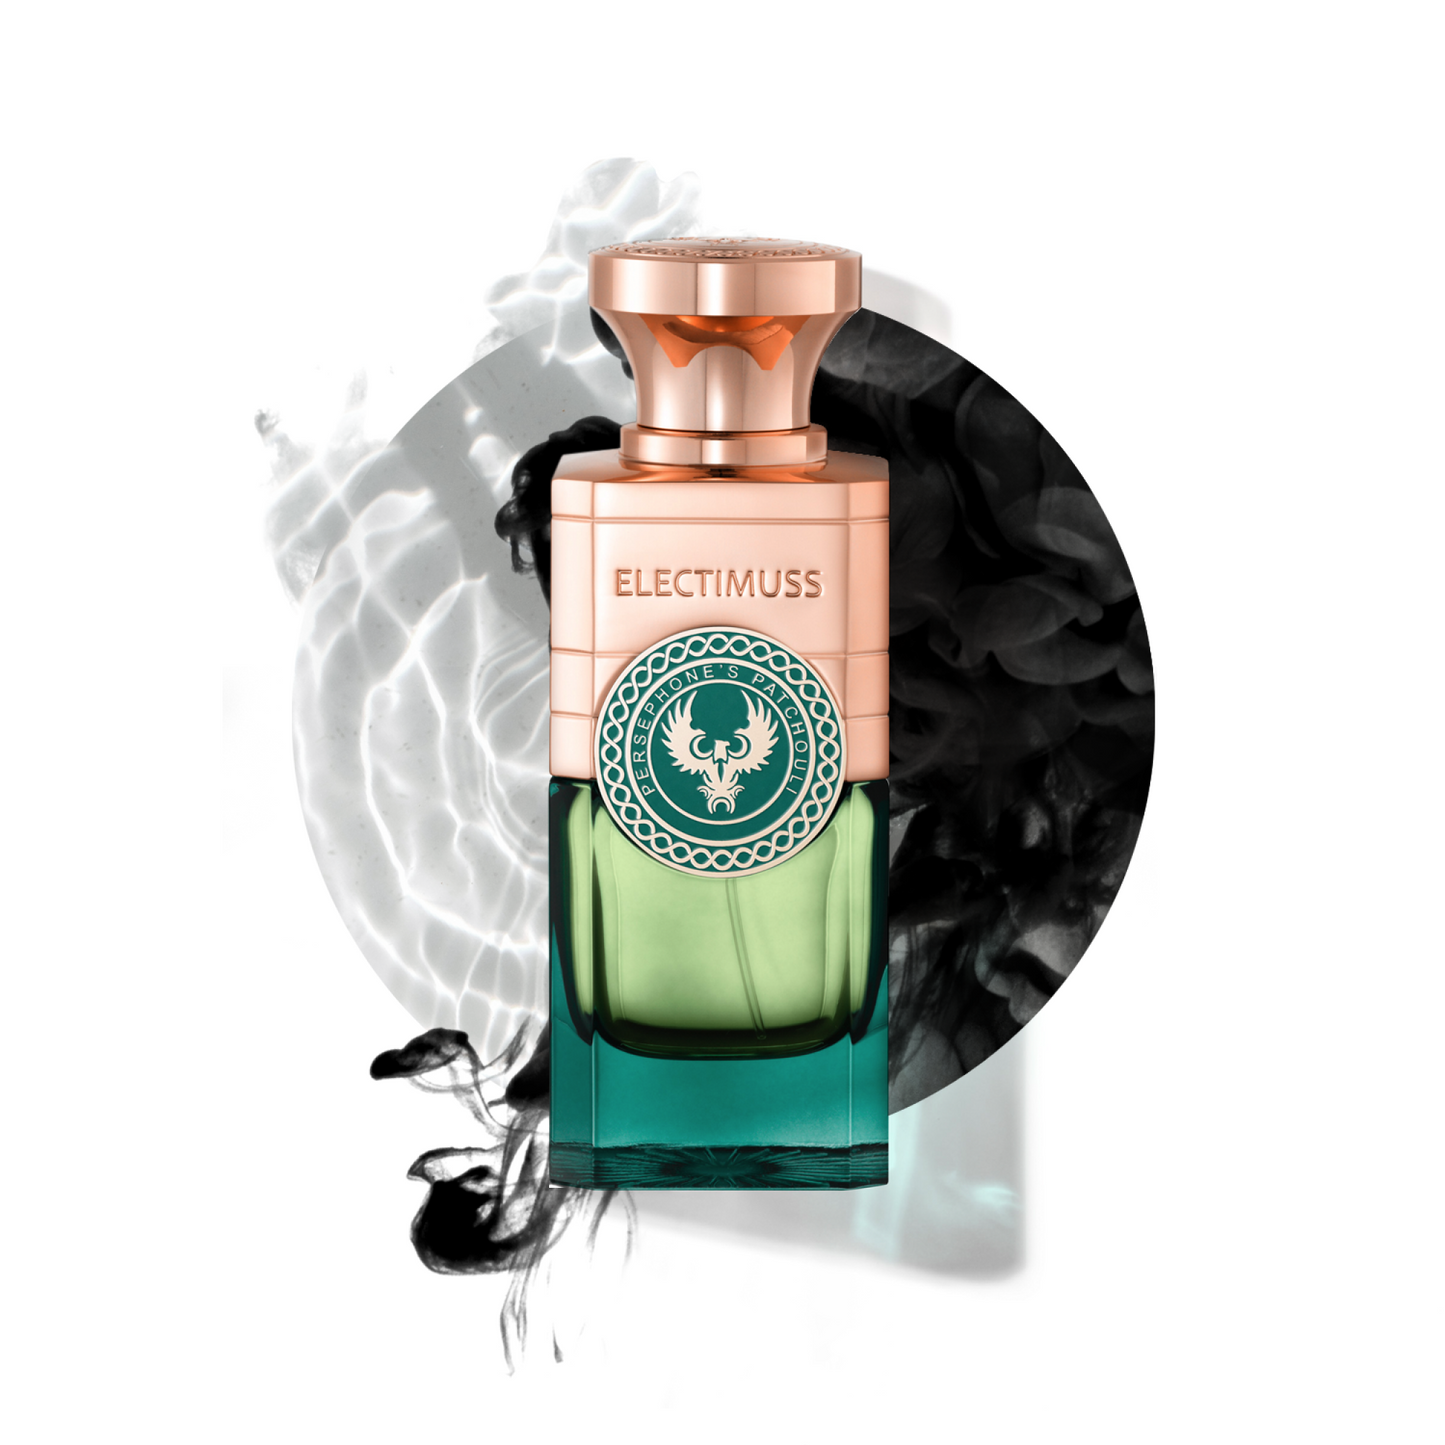 Persephone's Patchouli 3.4 oz Extrait de Parfum